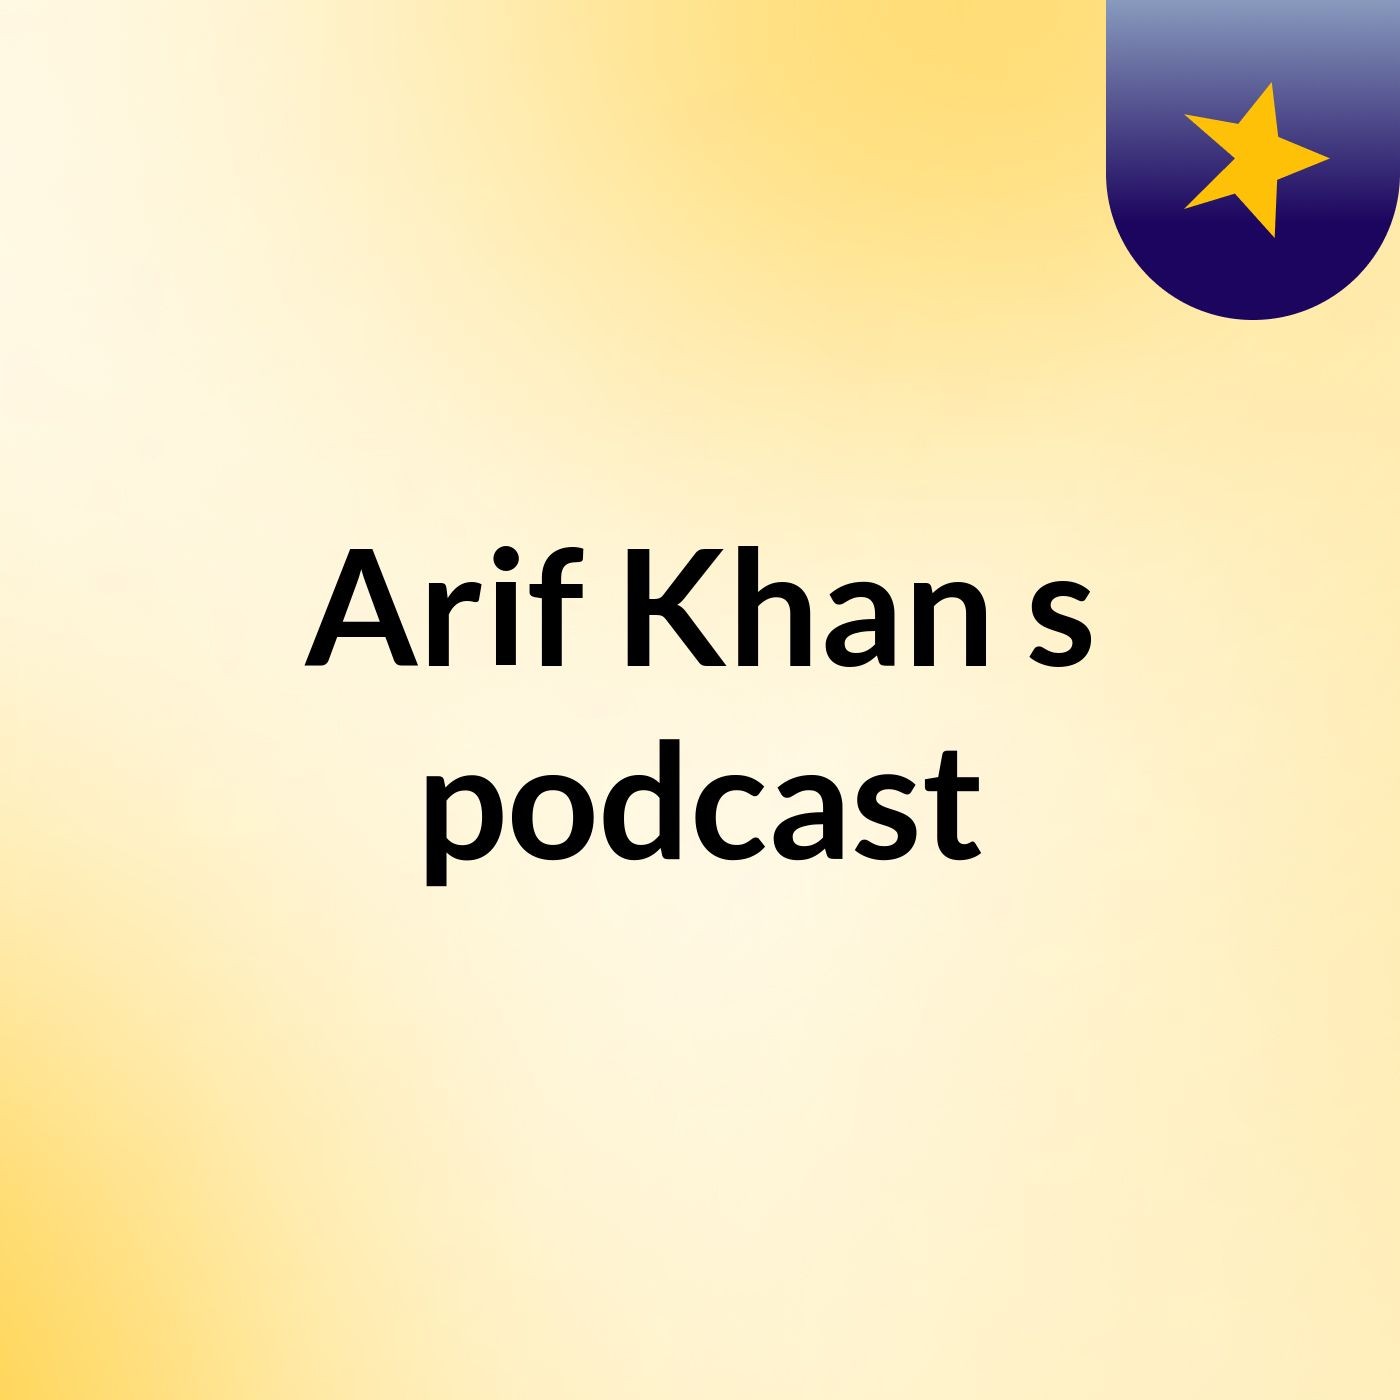 Arif Khan's podcast